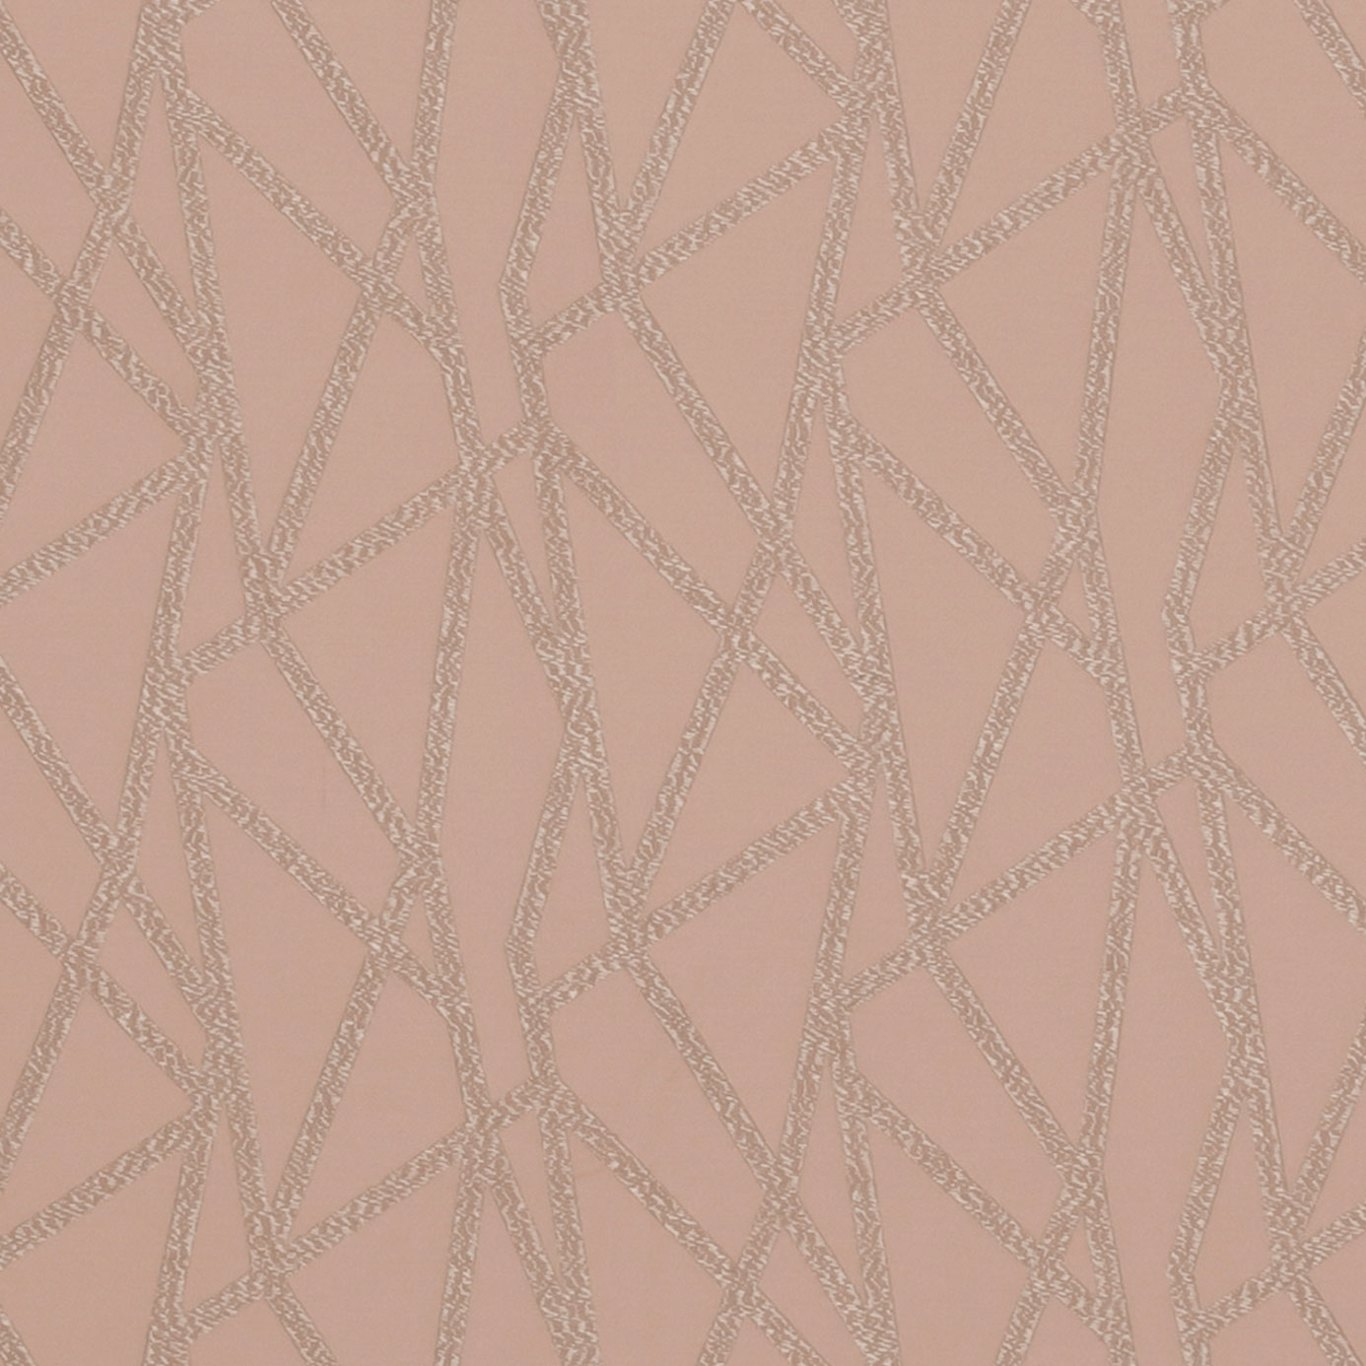 Geomo Blush Fabric by CNC